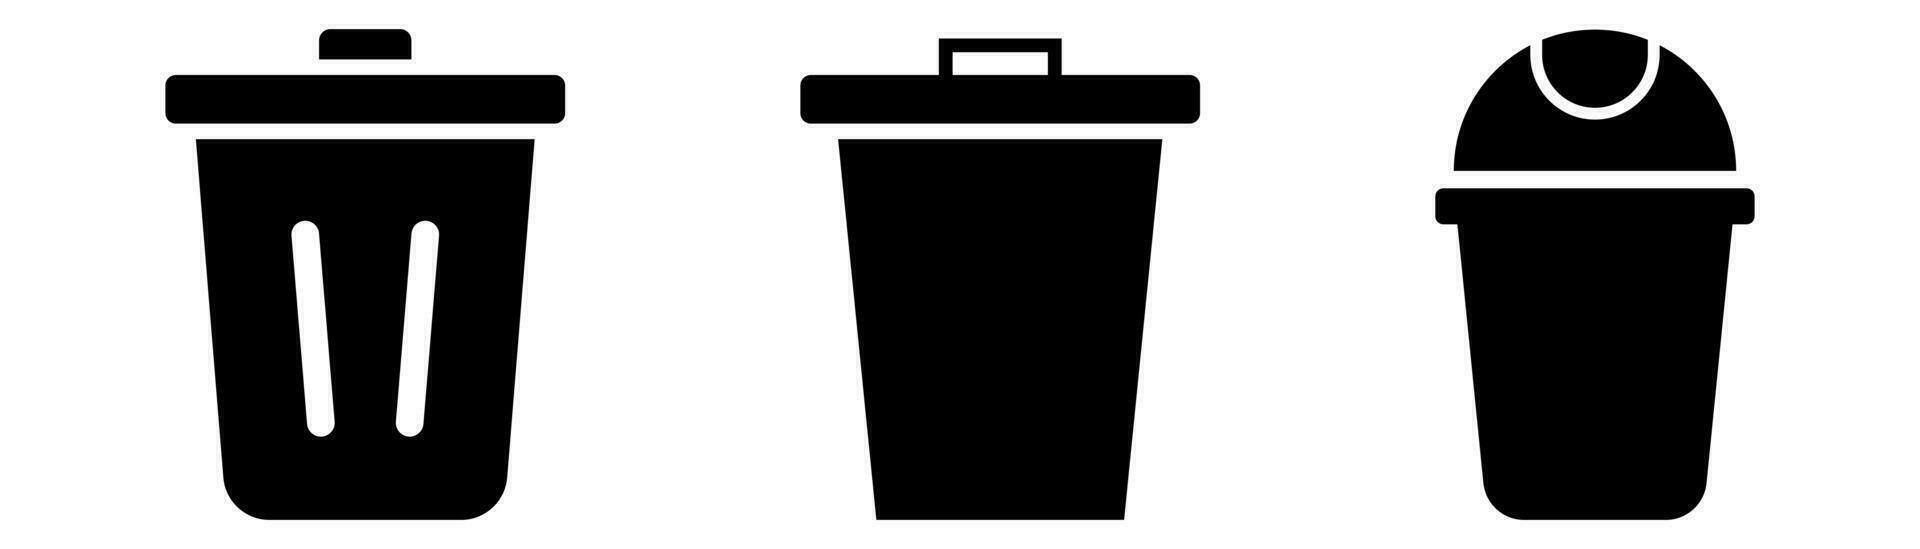 basura compartimiento colocar. reciclar compartimiento en negro. basura lata iconos basura envase. reciclar símbolo vector